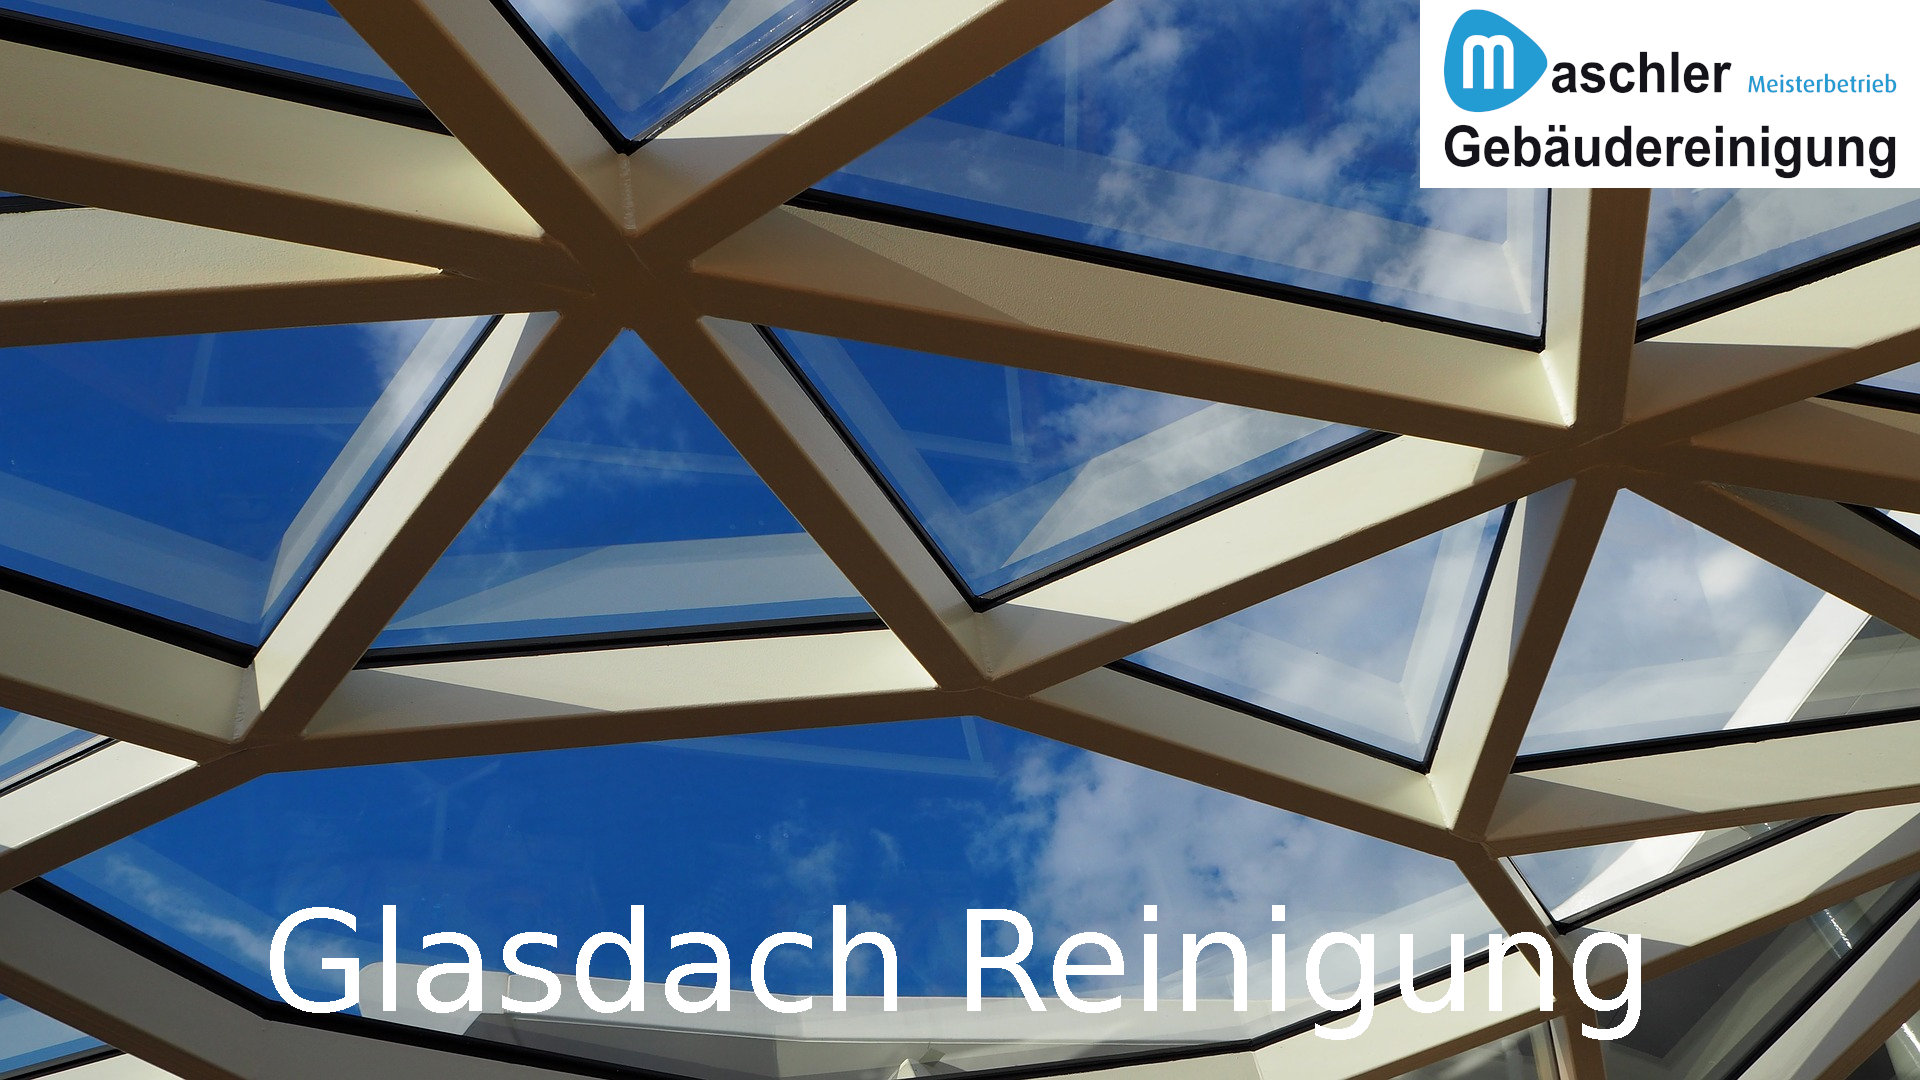 Reinigung Glasdach - Gebäudereinigung Maschler Schwerin